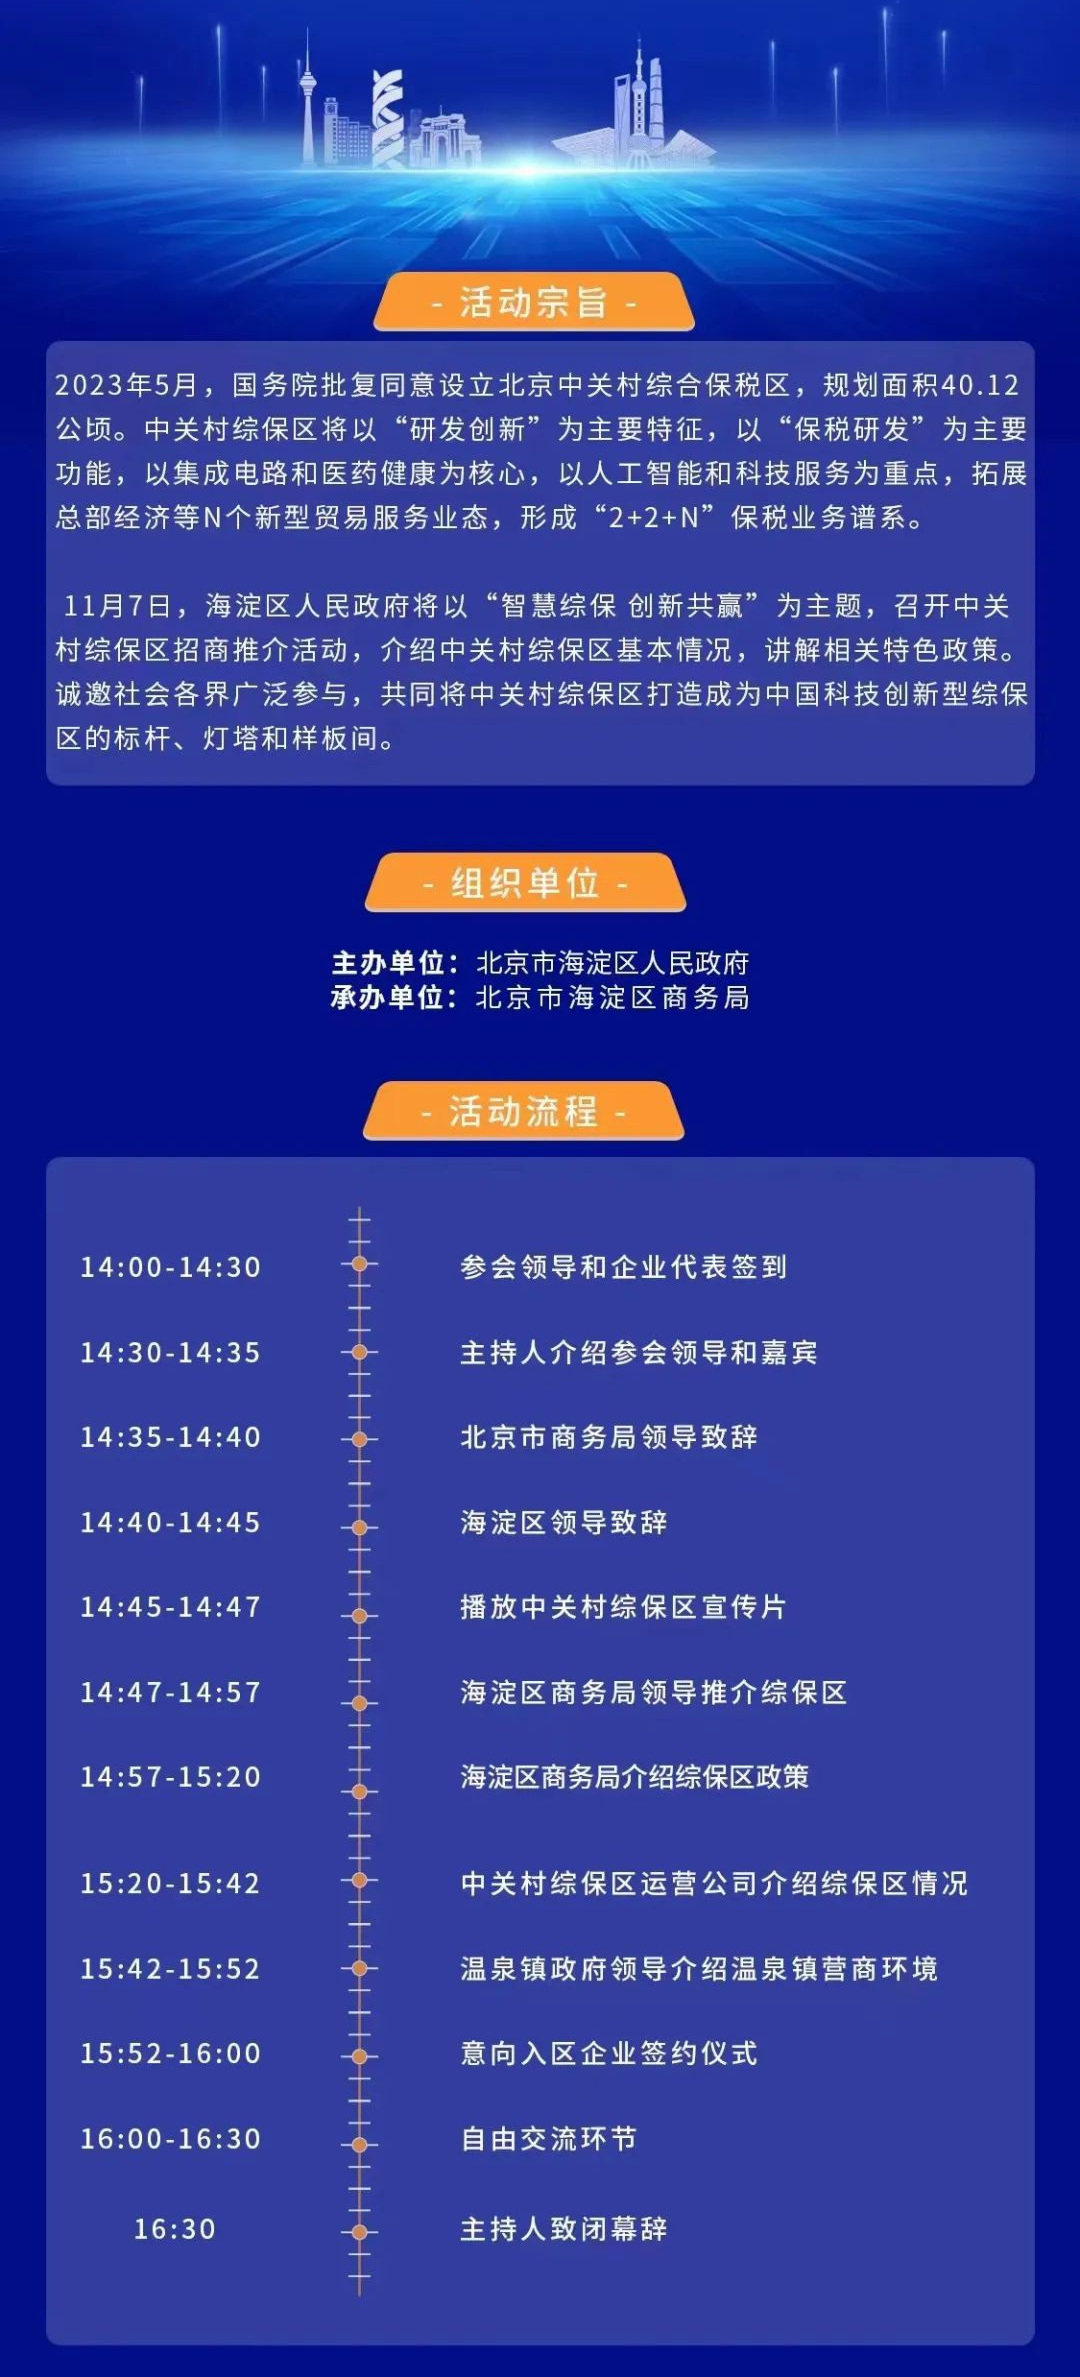 北京中关村综合保税区走进第六届上海进博会招商推介会